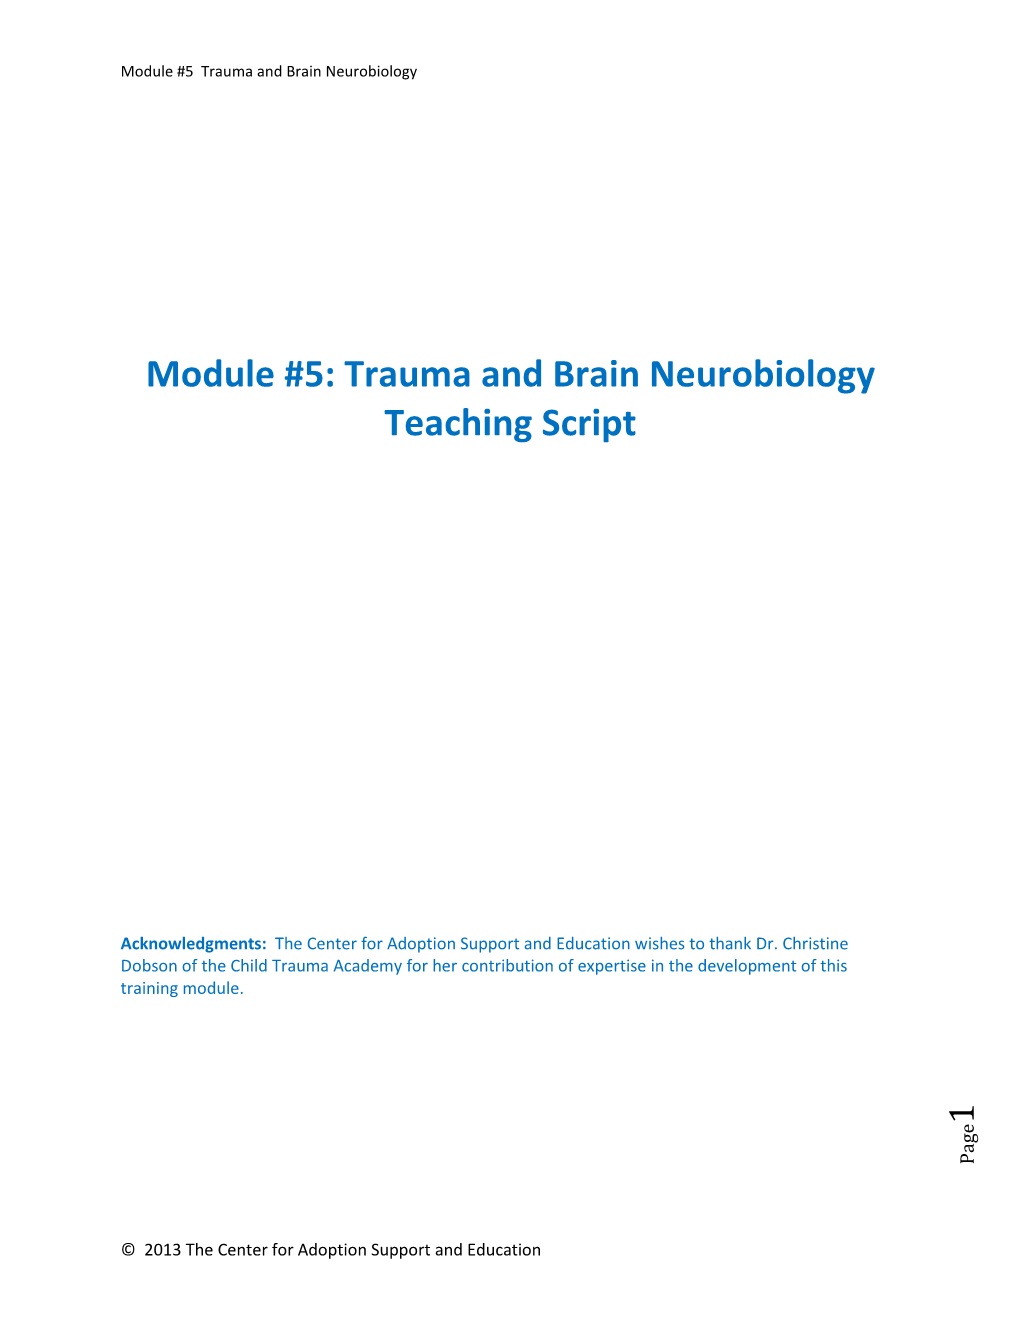 Module #5: Trauma and Brain Neurobiology Teaching Script